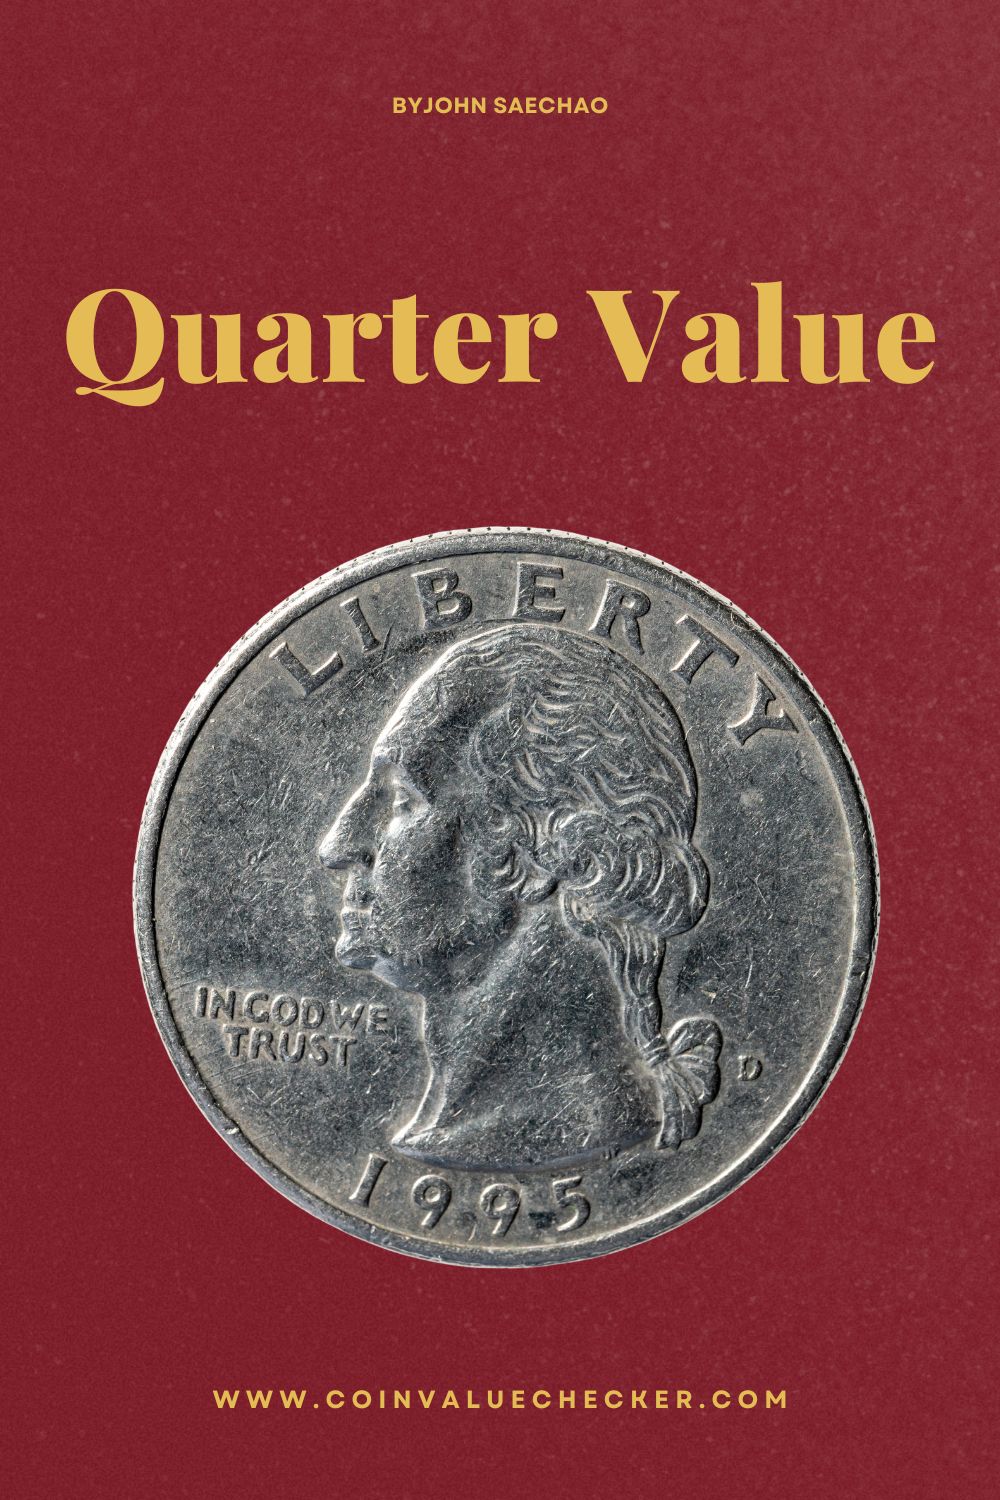 Quarter Value Guide